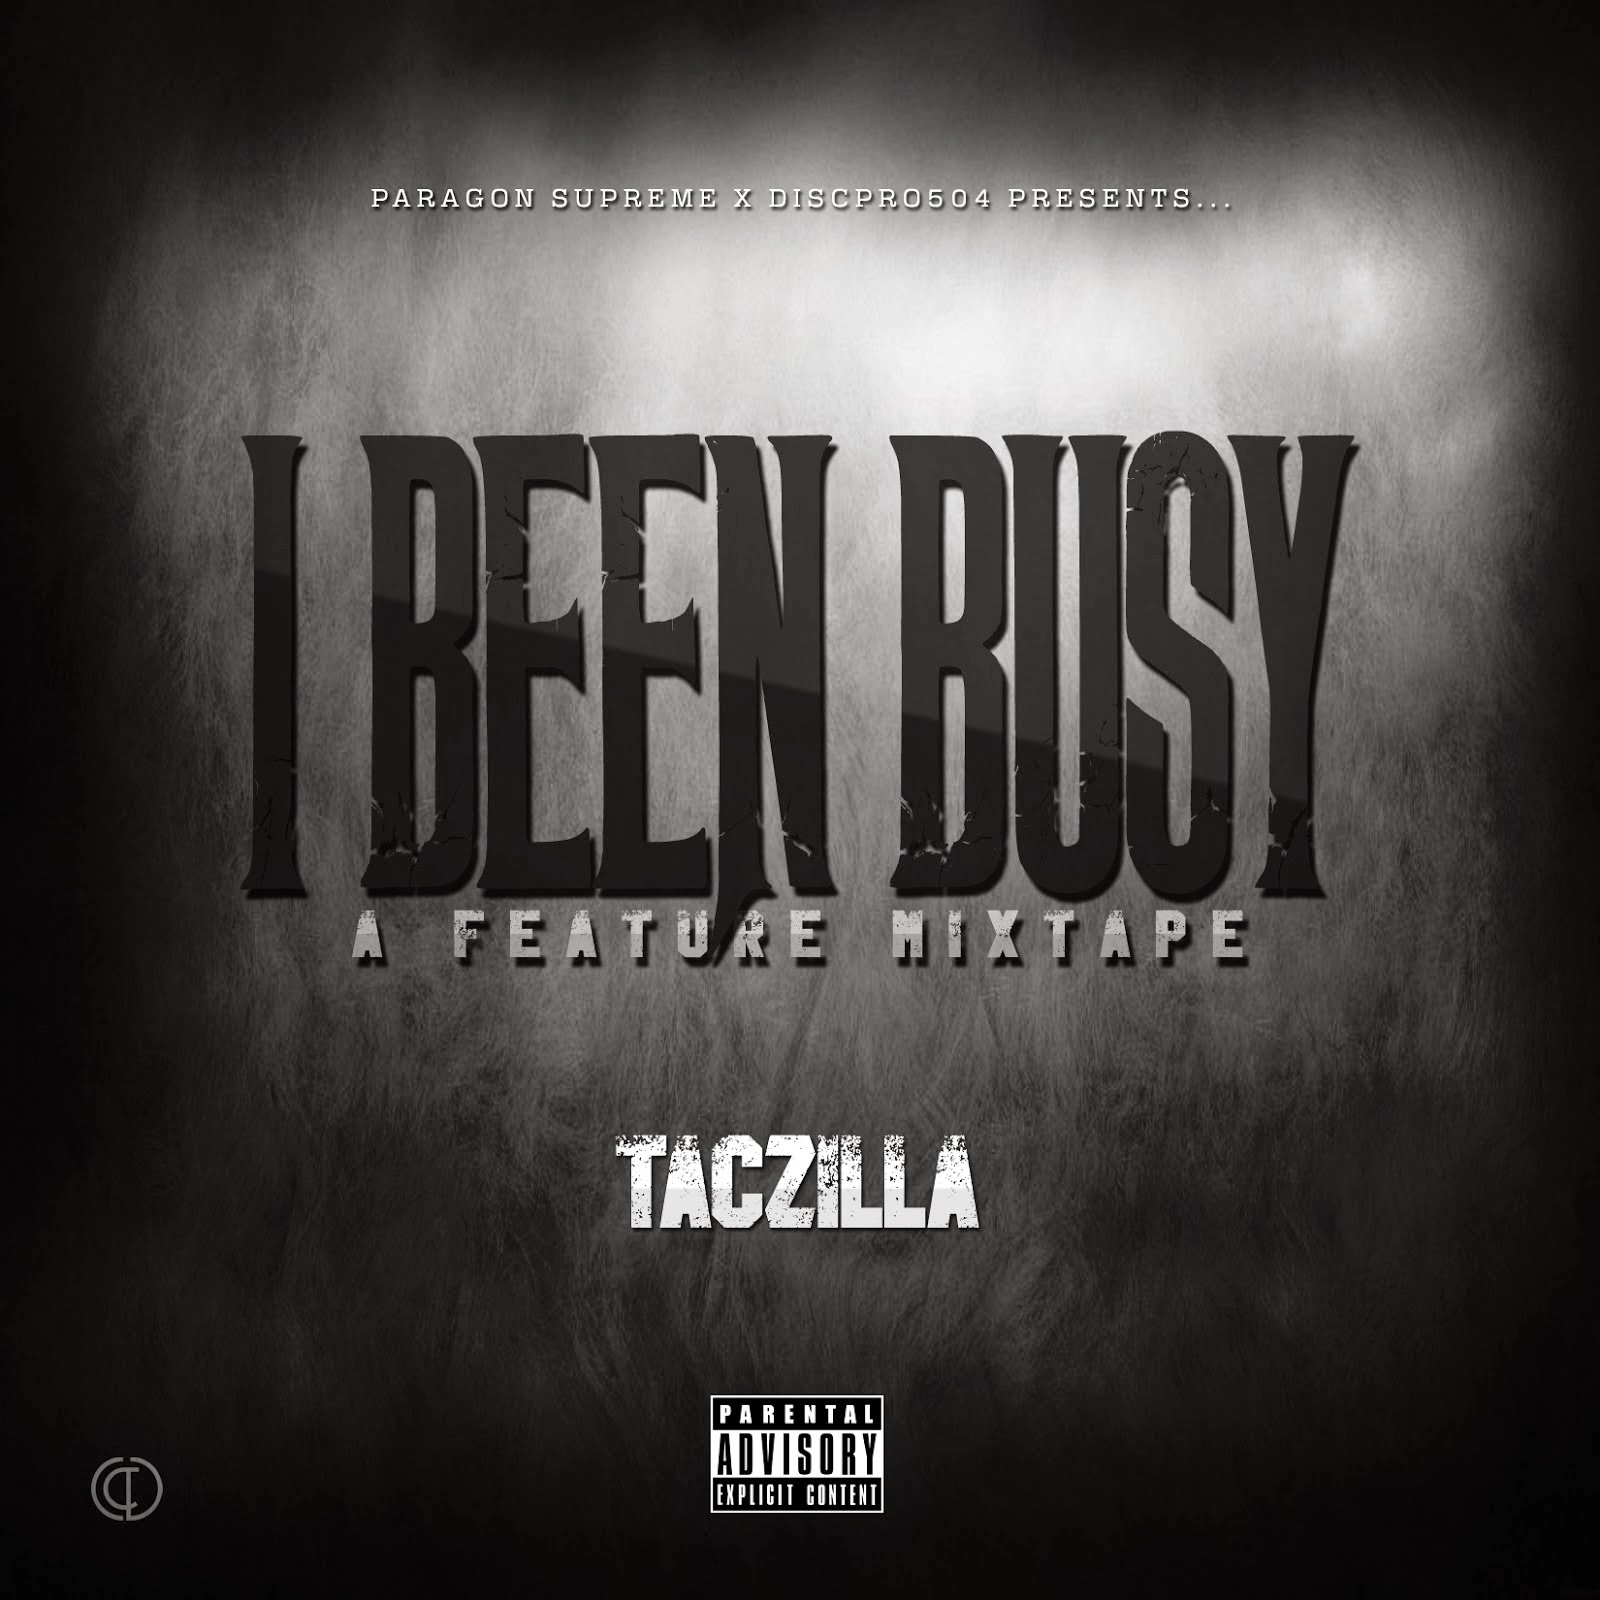 TacZilla - I Been Busy (Feat Mixtape)